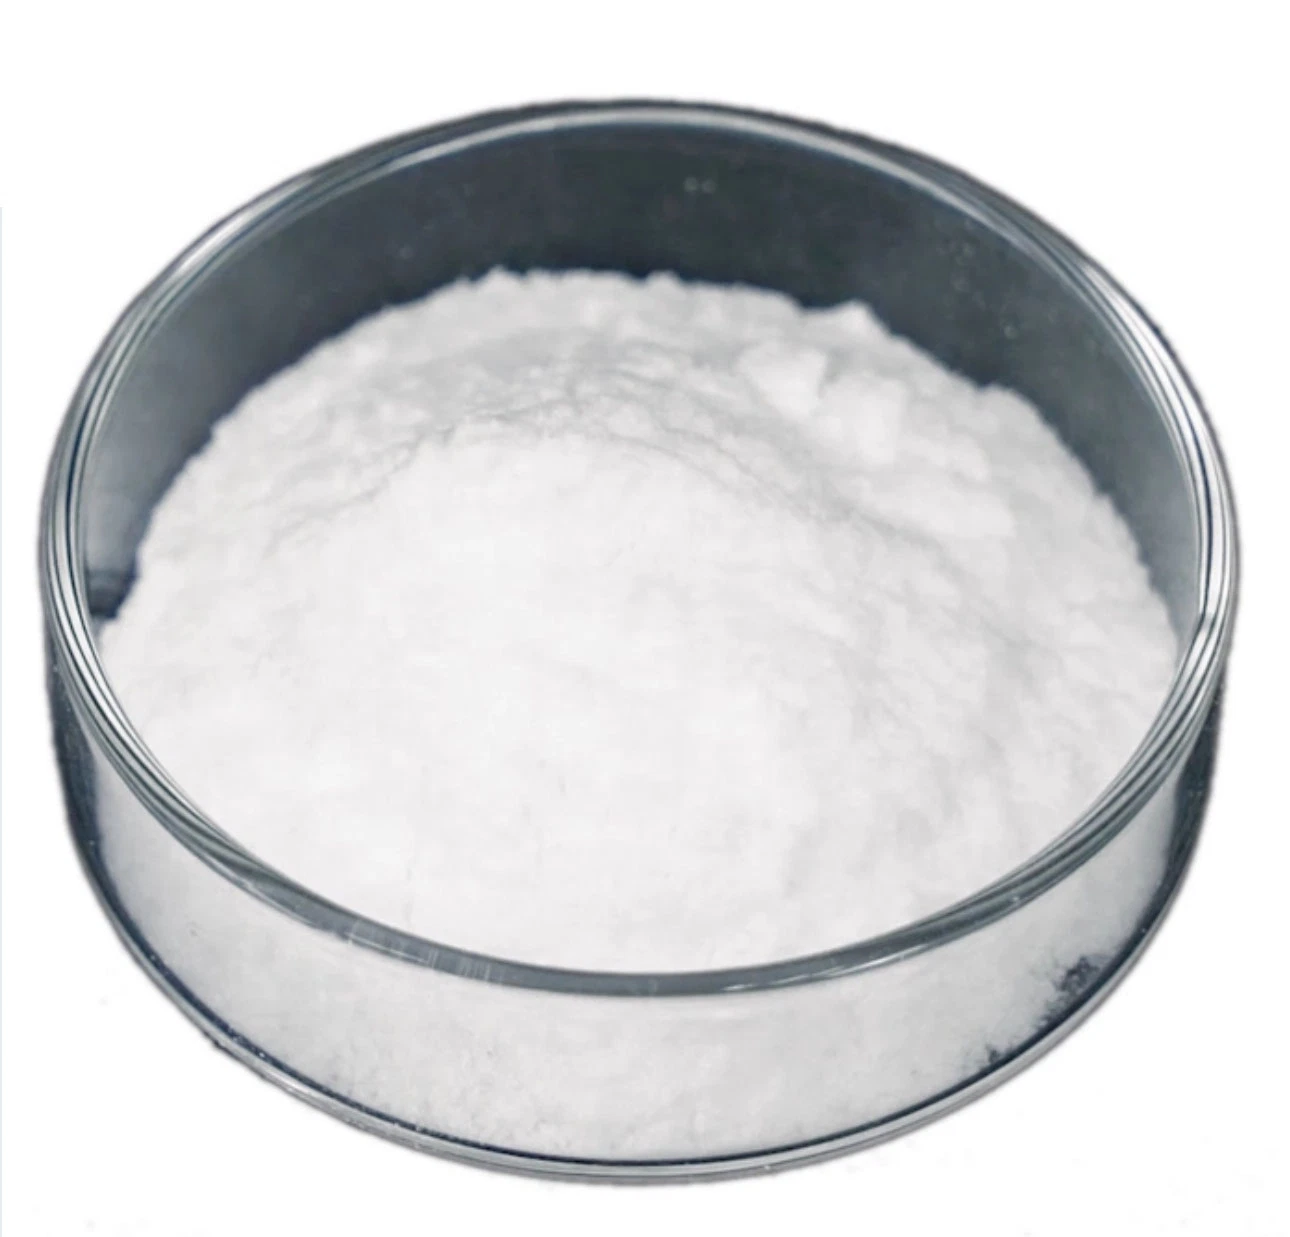 Additif alimentaire de qualité industrielle de la métallurgie de carbonate de sodium bicarbonate de soude de fournisseur chinois